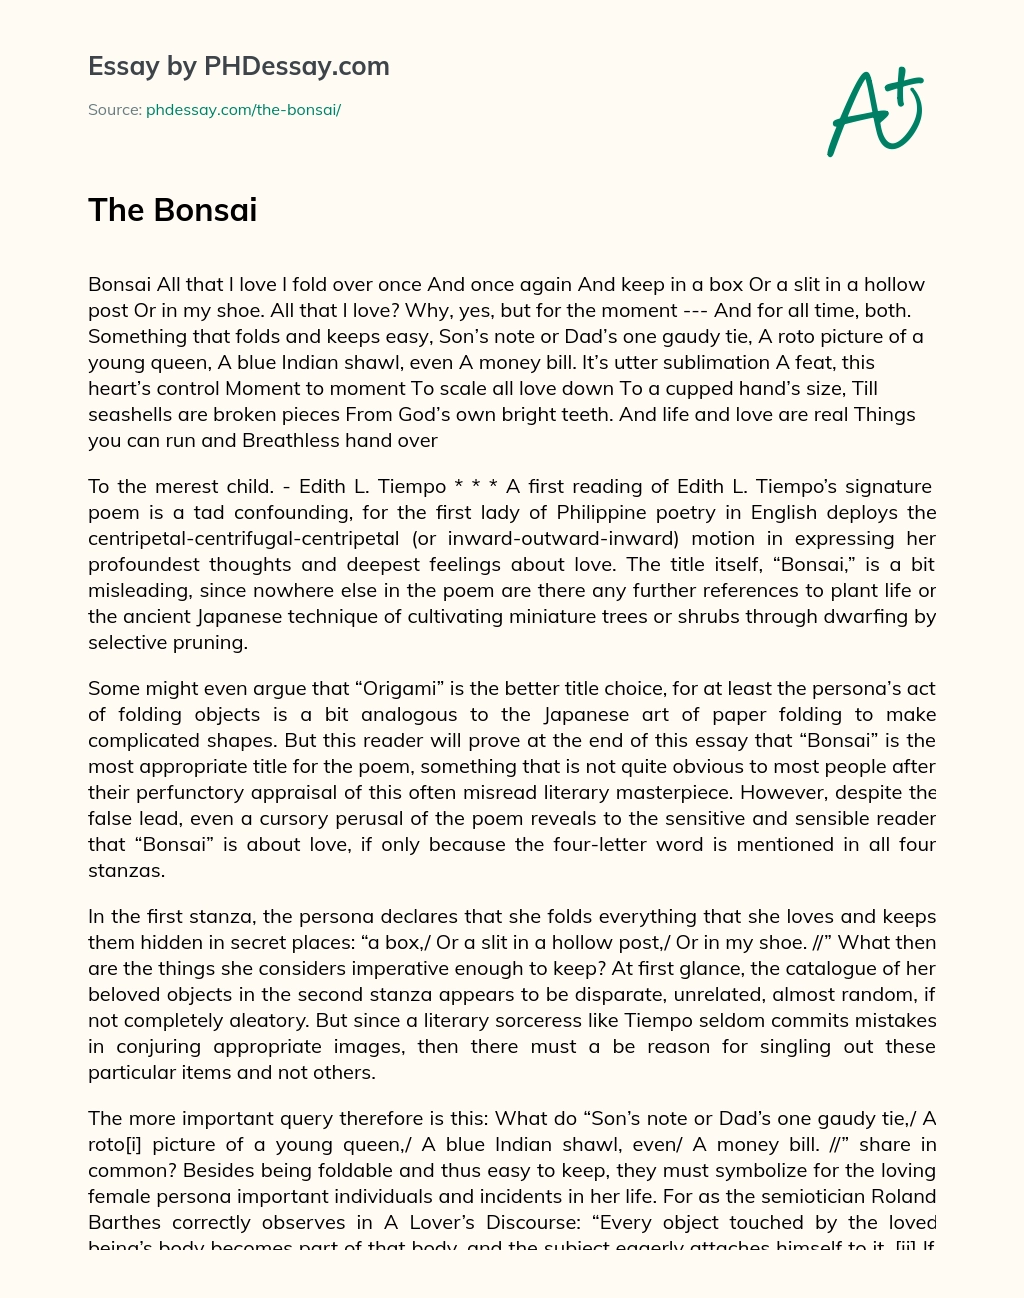 The Bonsai essay